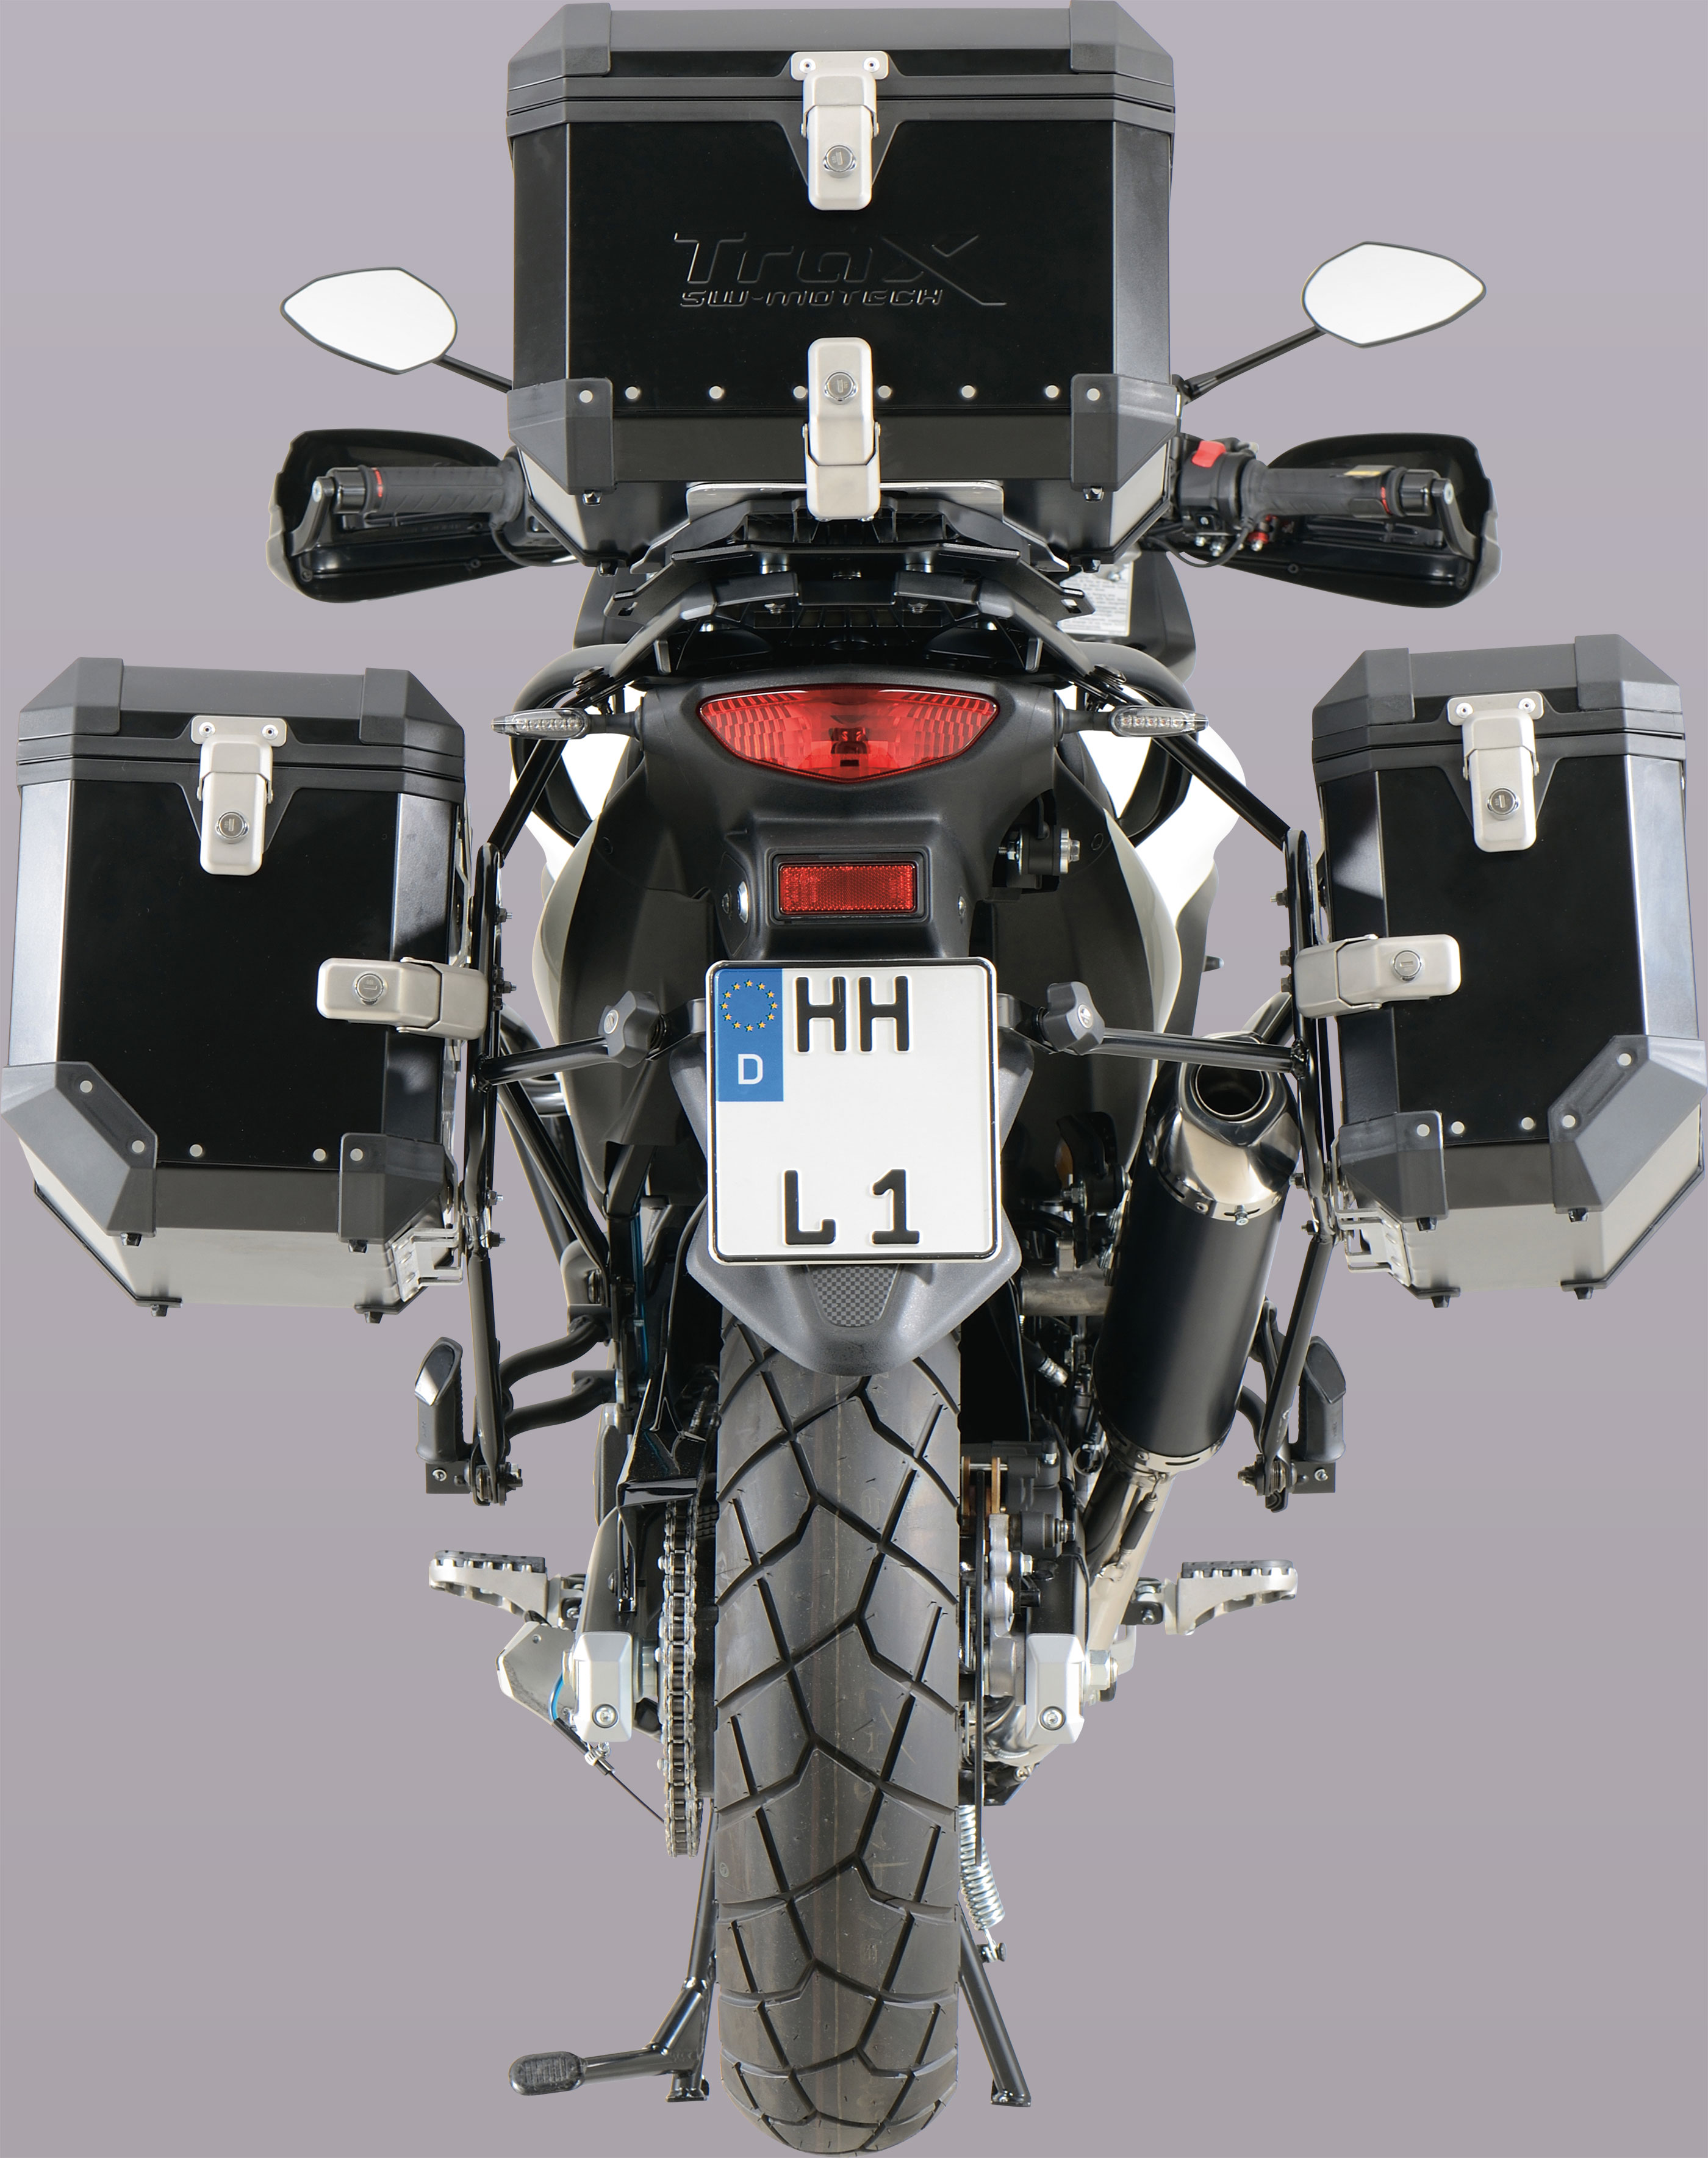 ACCESSOIRES - protections TBR et accessoires pour Suzuki DL 650 V-Strom -  Mototribu